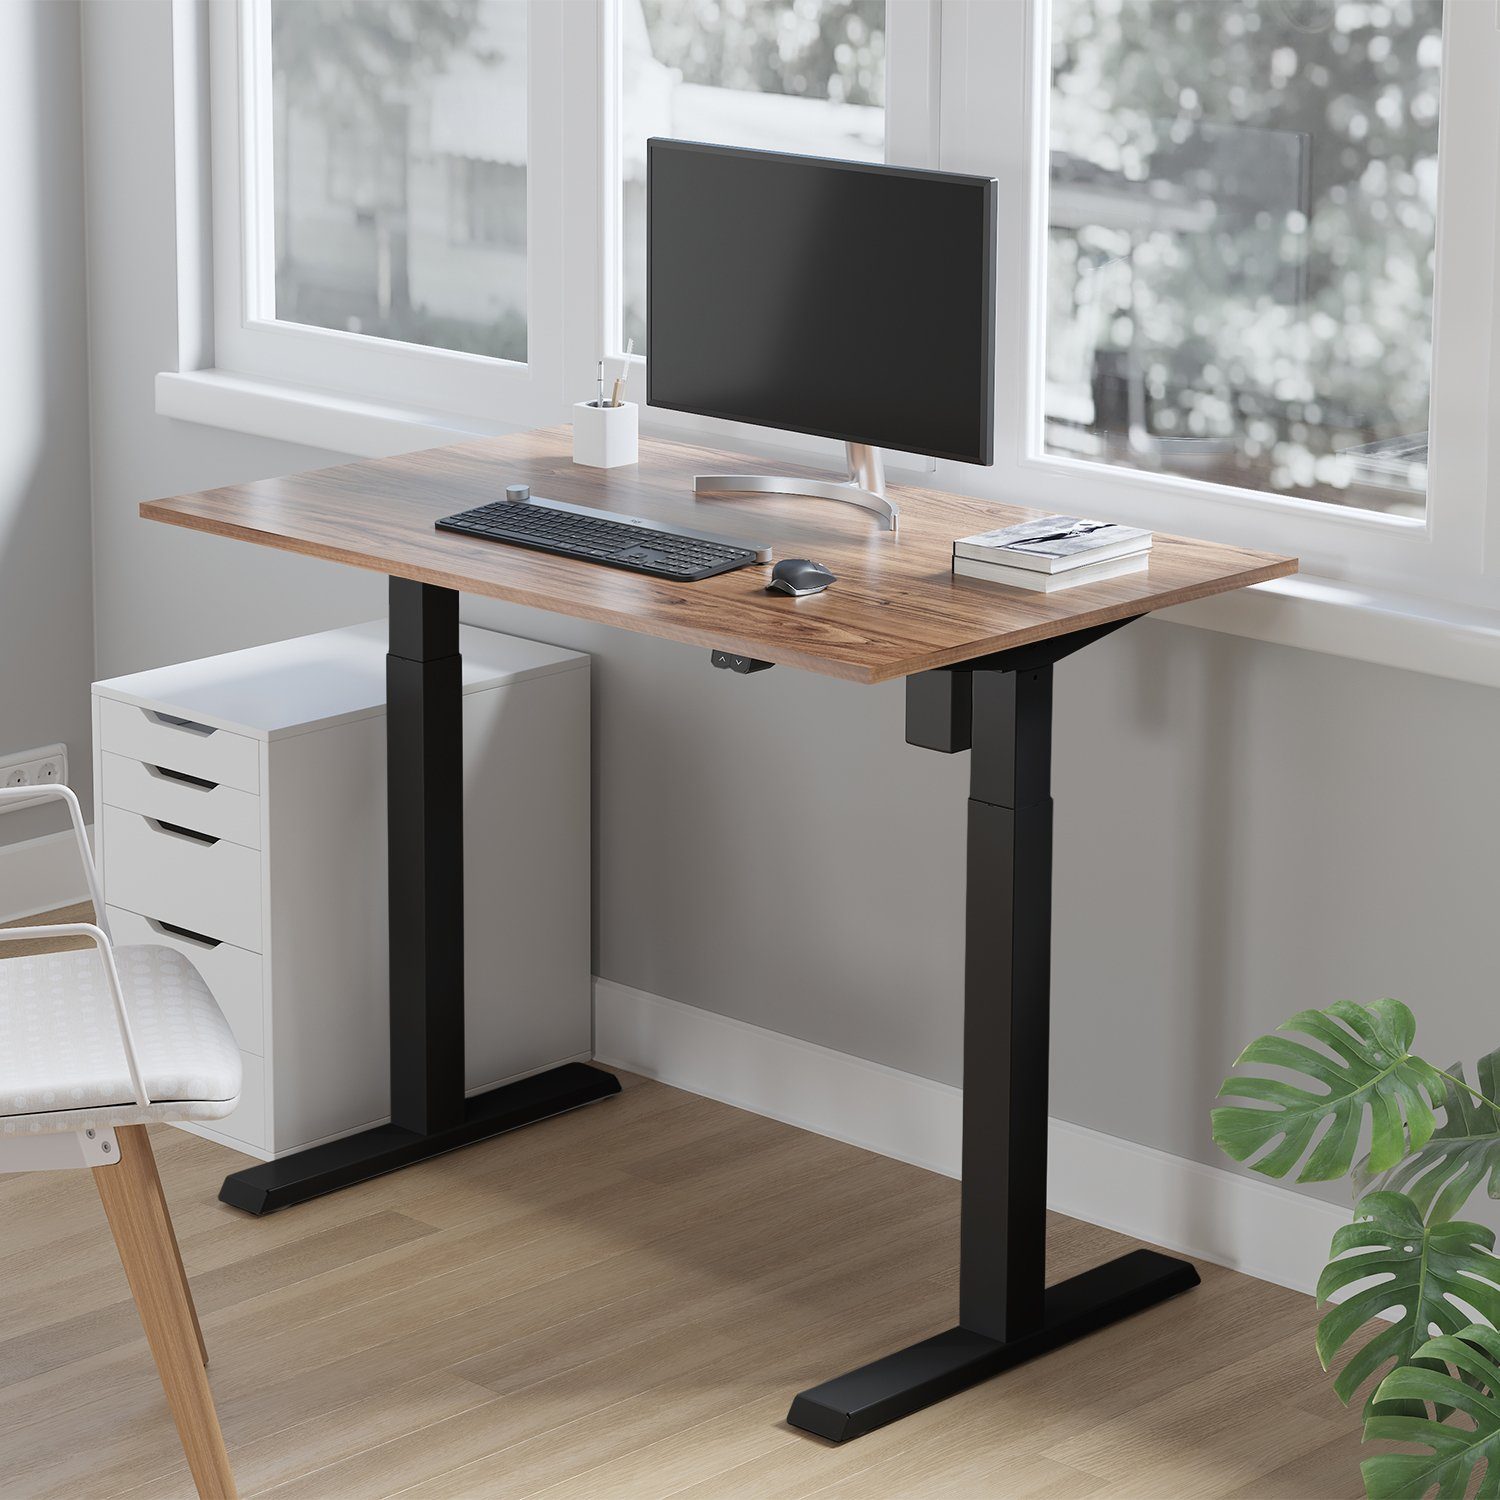 Maclean Schreibtisch ER-403, Sitz-Steh-Schreibtisch Tischgestell Weiß/Schwarz/Grau